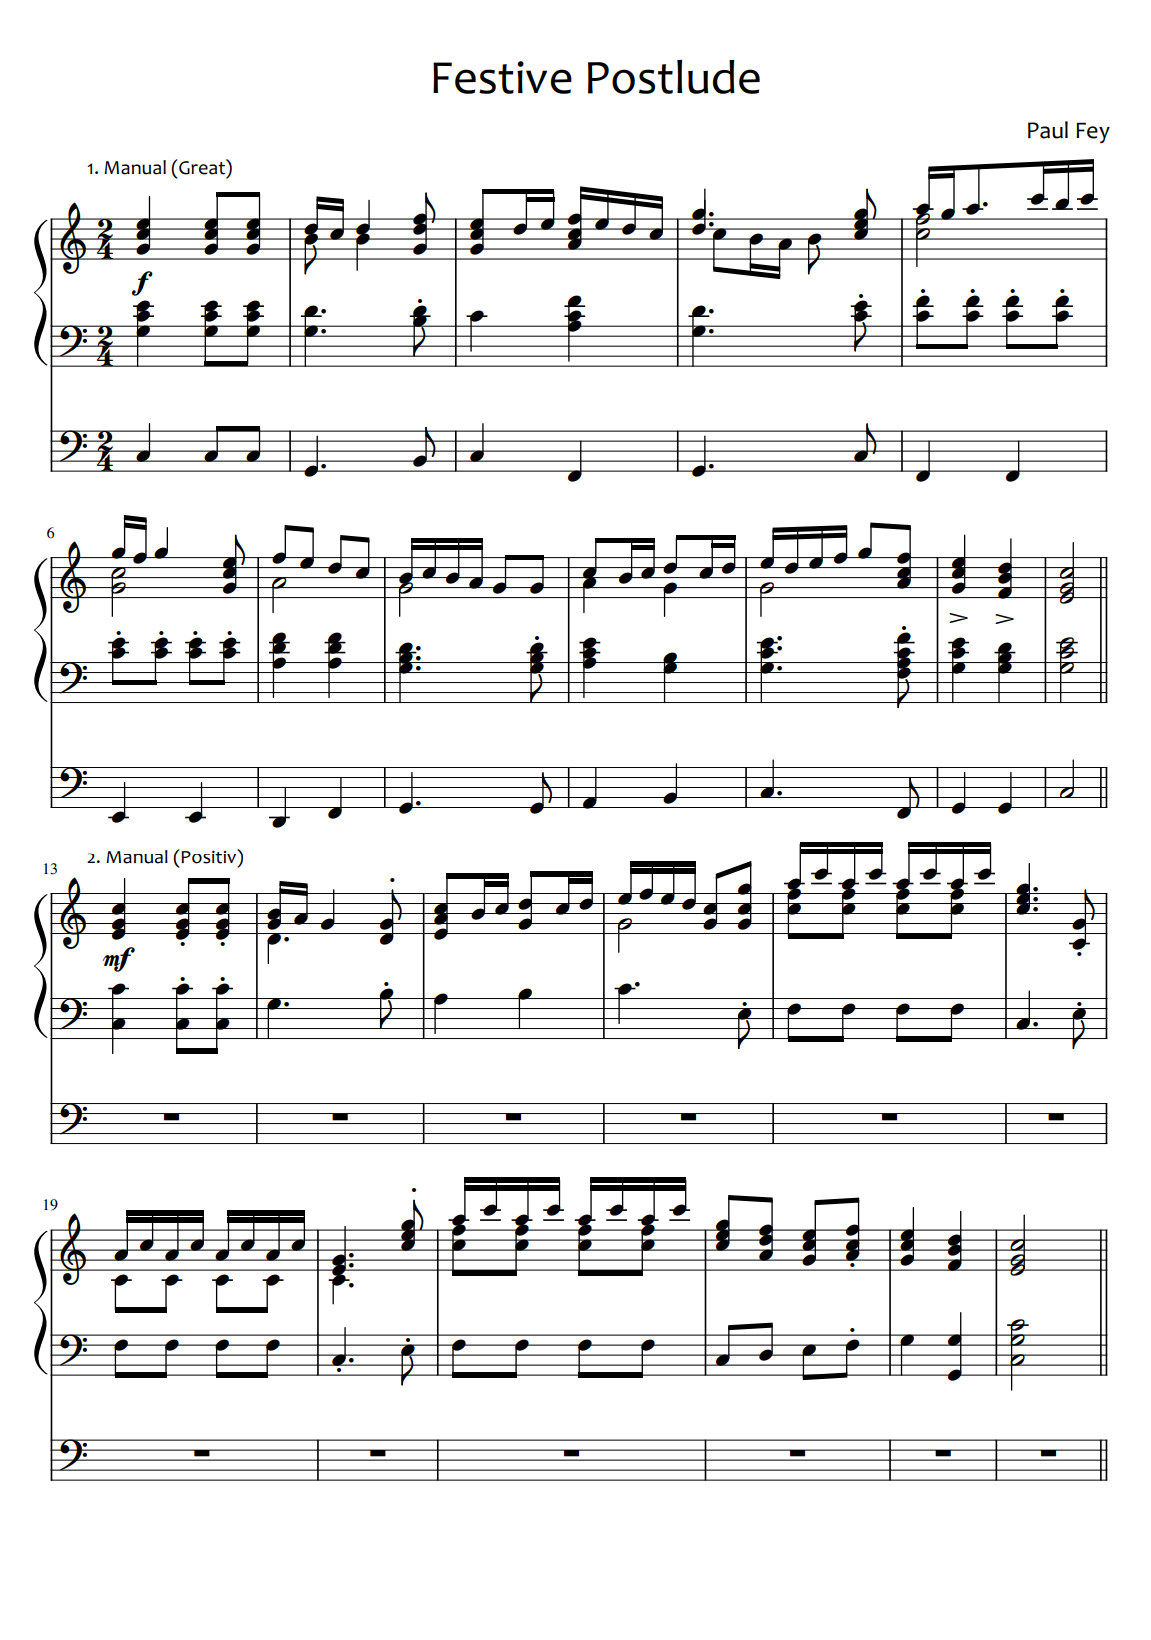 Festive Postlude in C Major (Sheet Music) - Music for Organ